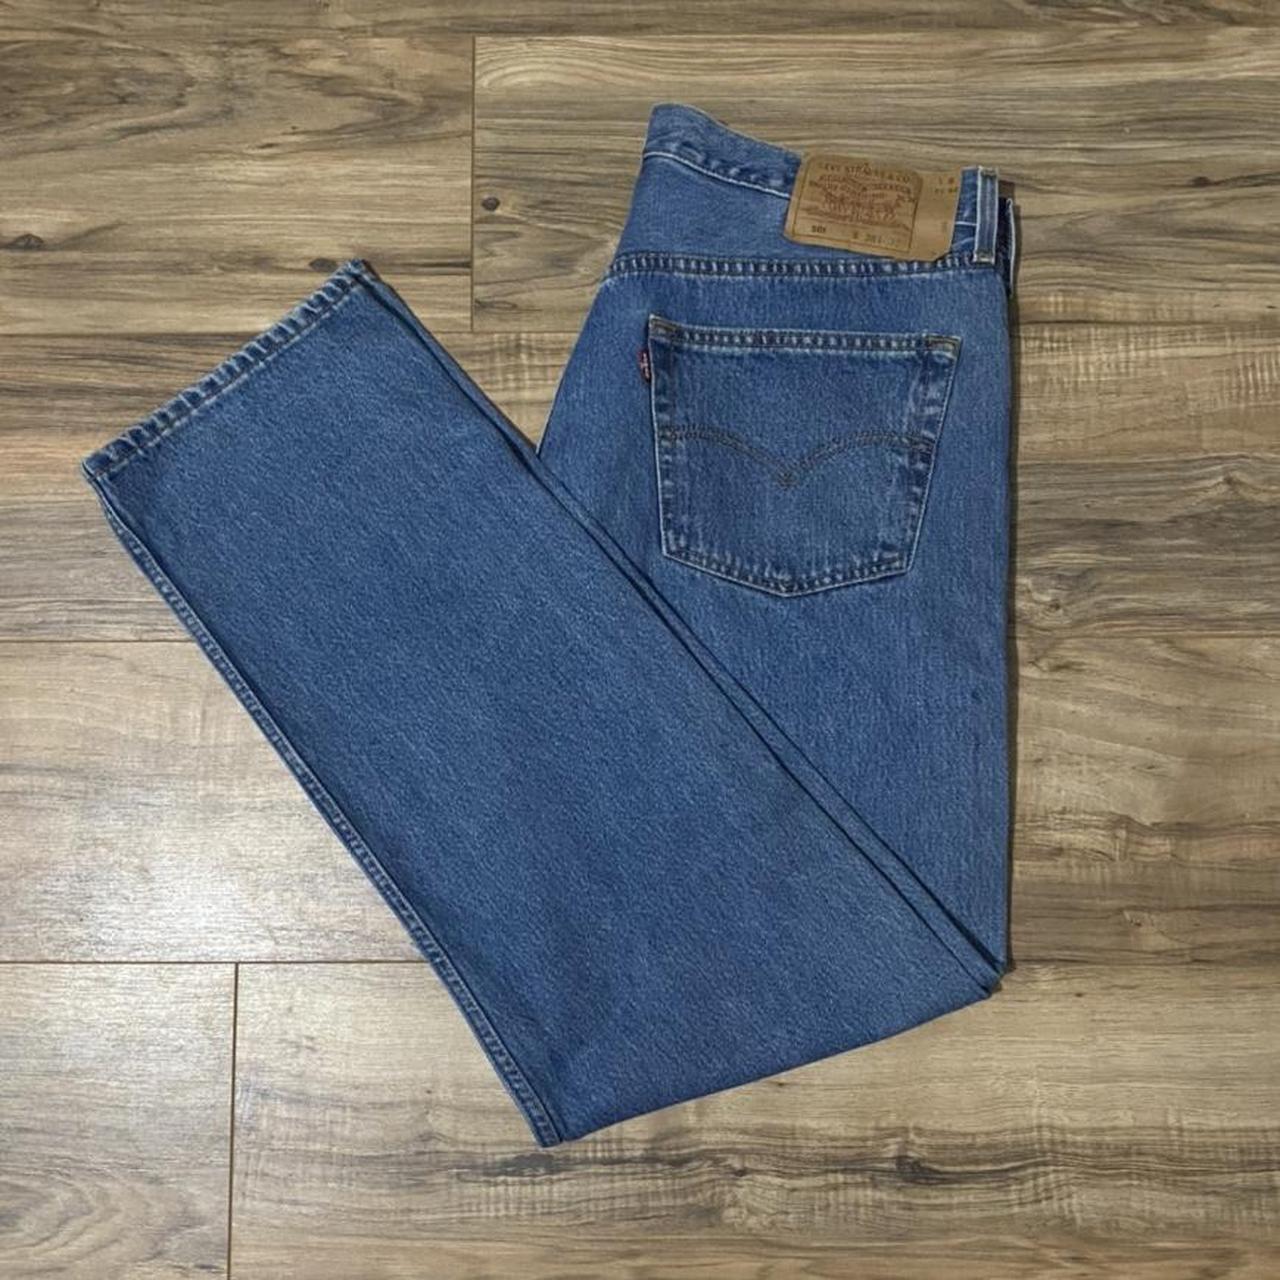 90s Levi Selvedge Denim Button Jeans 38x32 intage... - Depop